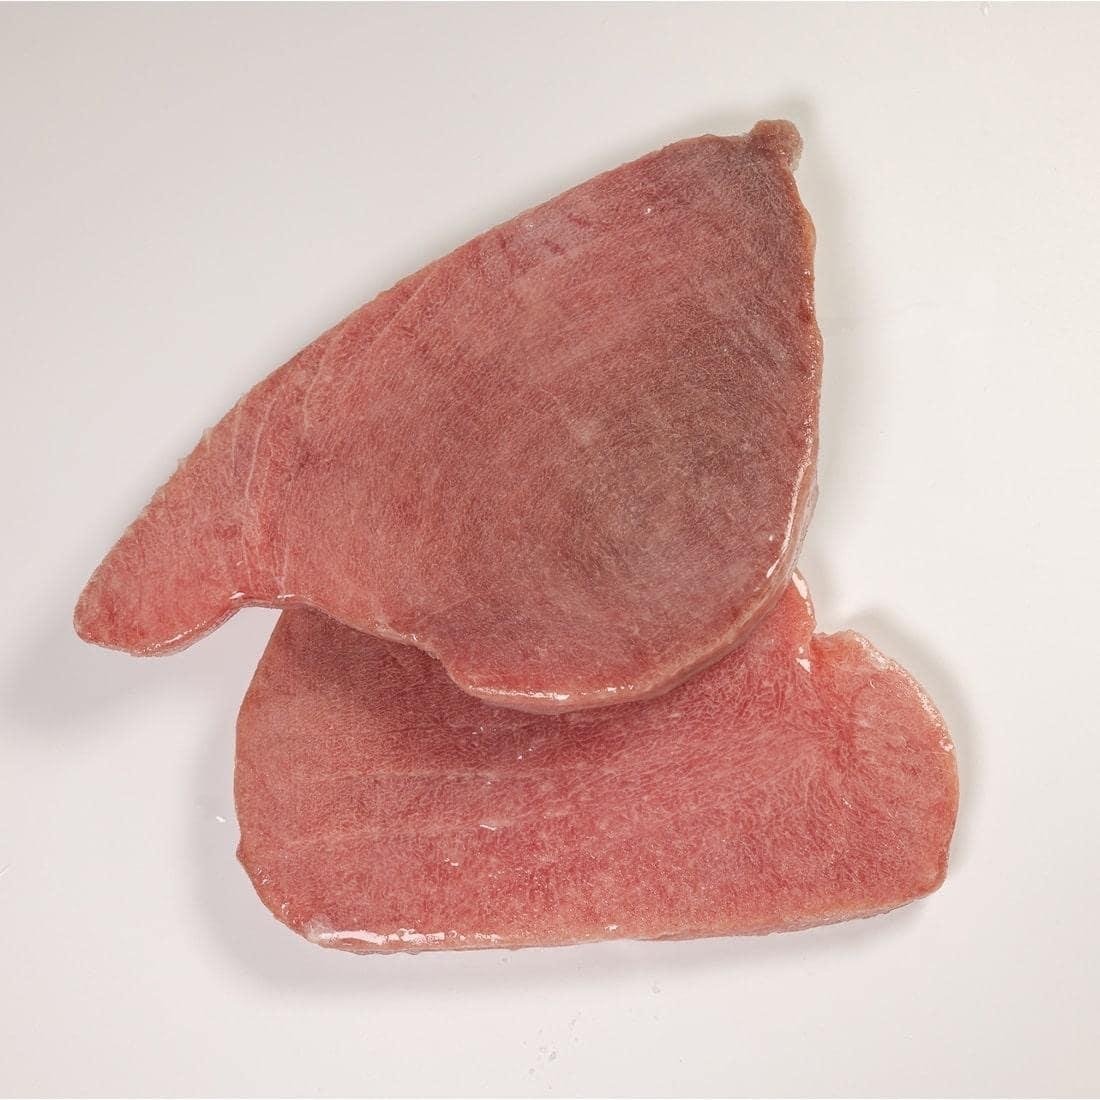 Tuna slices - Cover Image